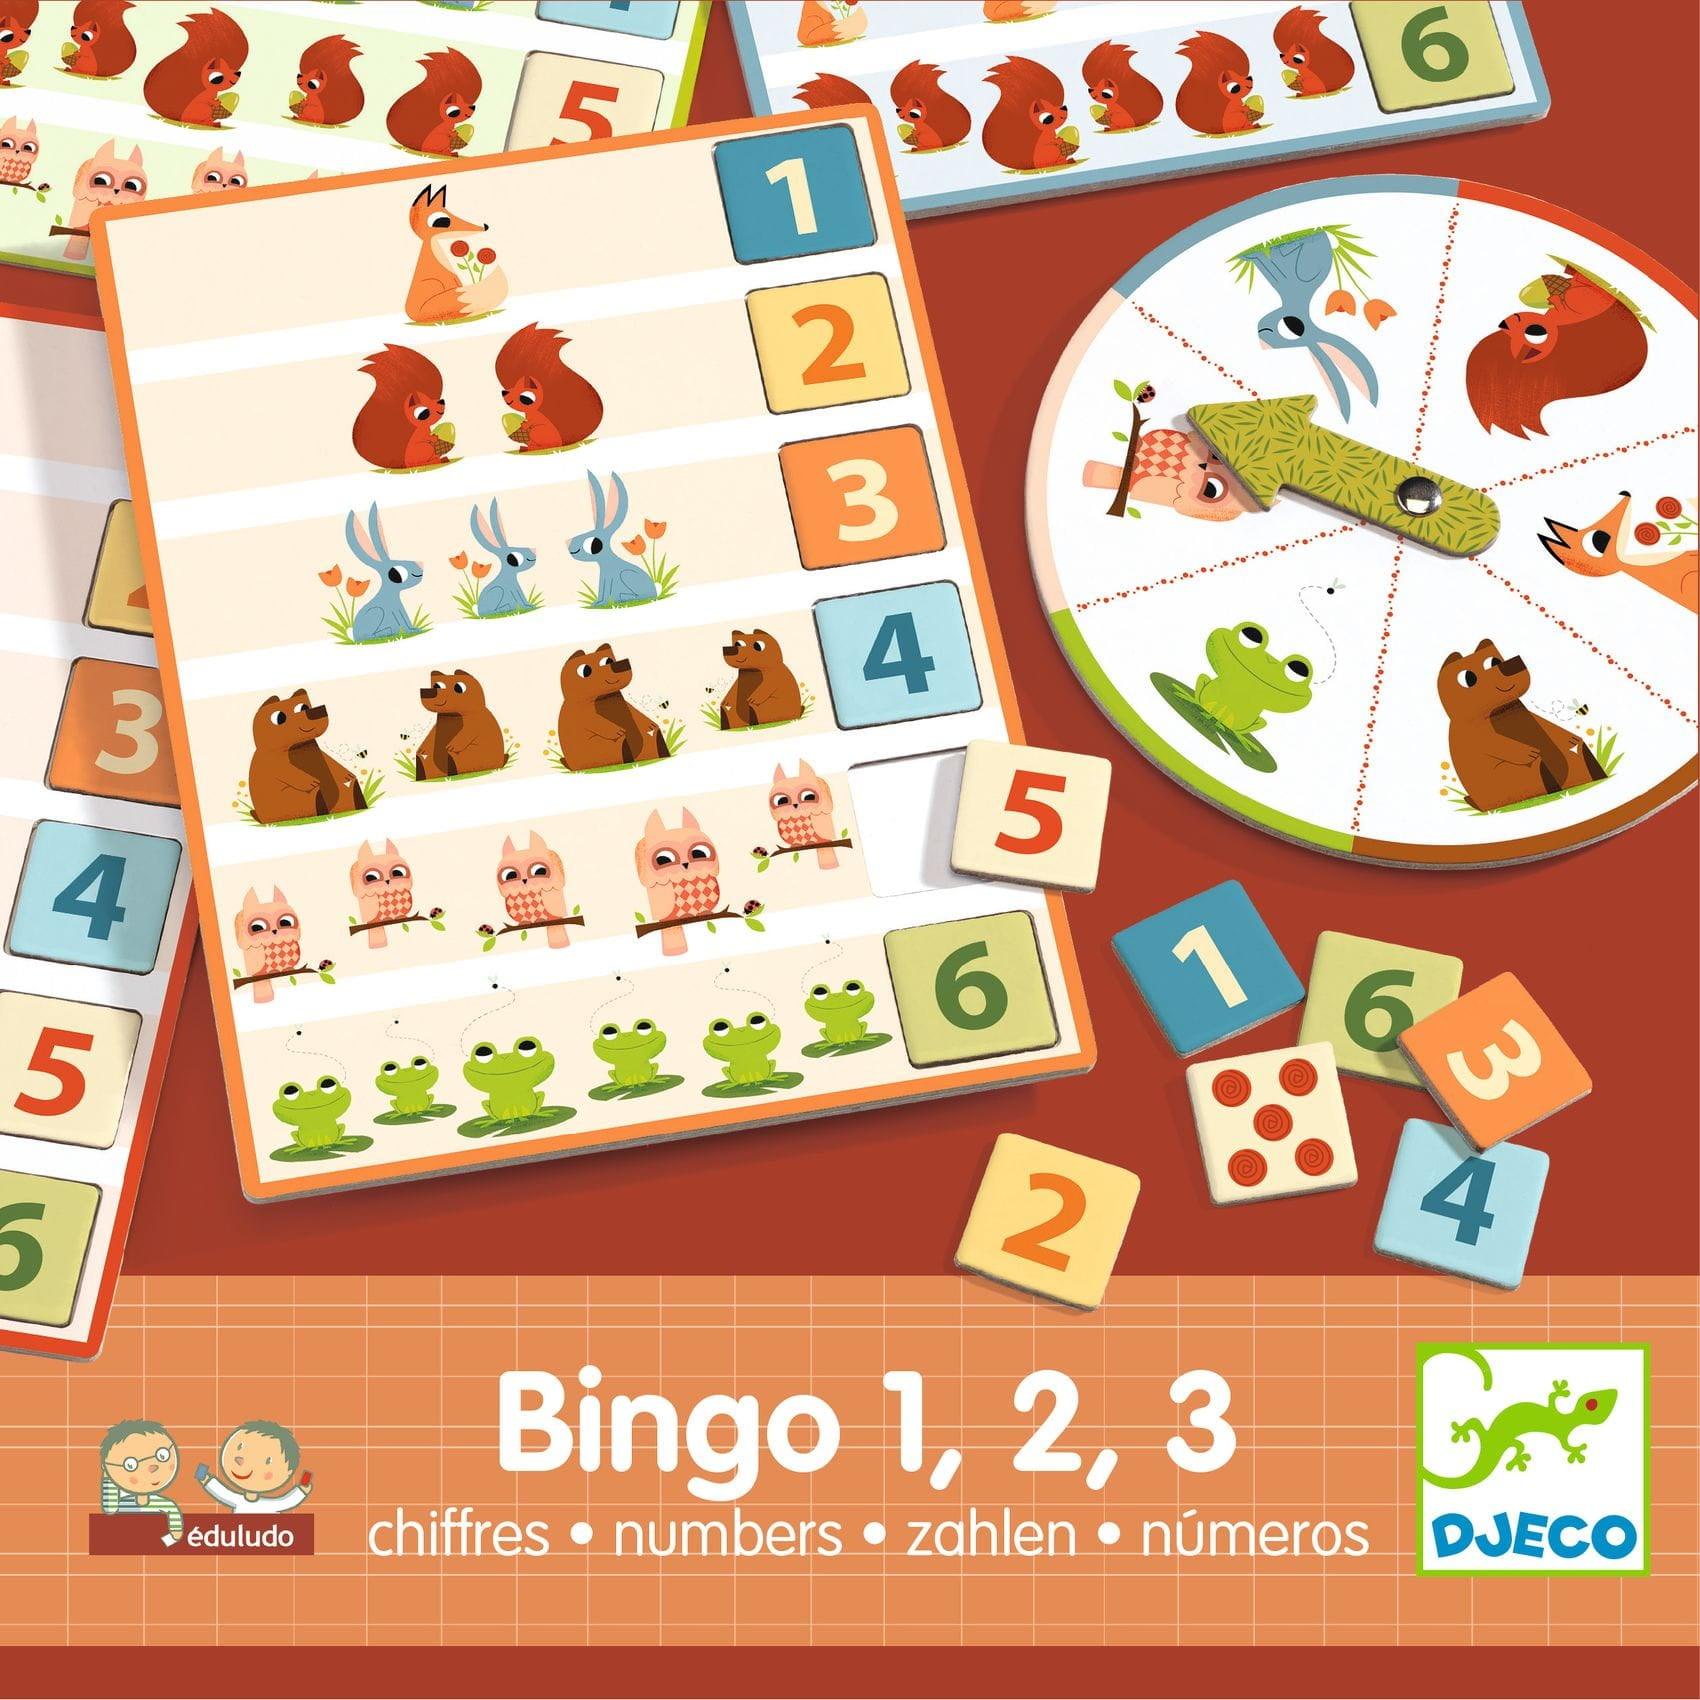 DJECO: Eduludo Bingo 1,2,3 oktatási játék